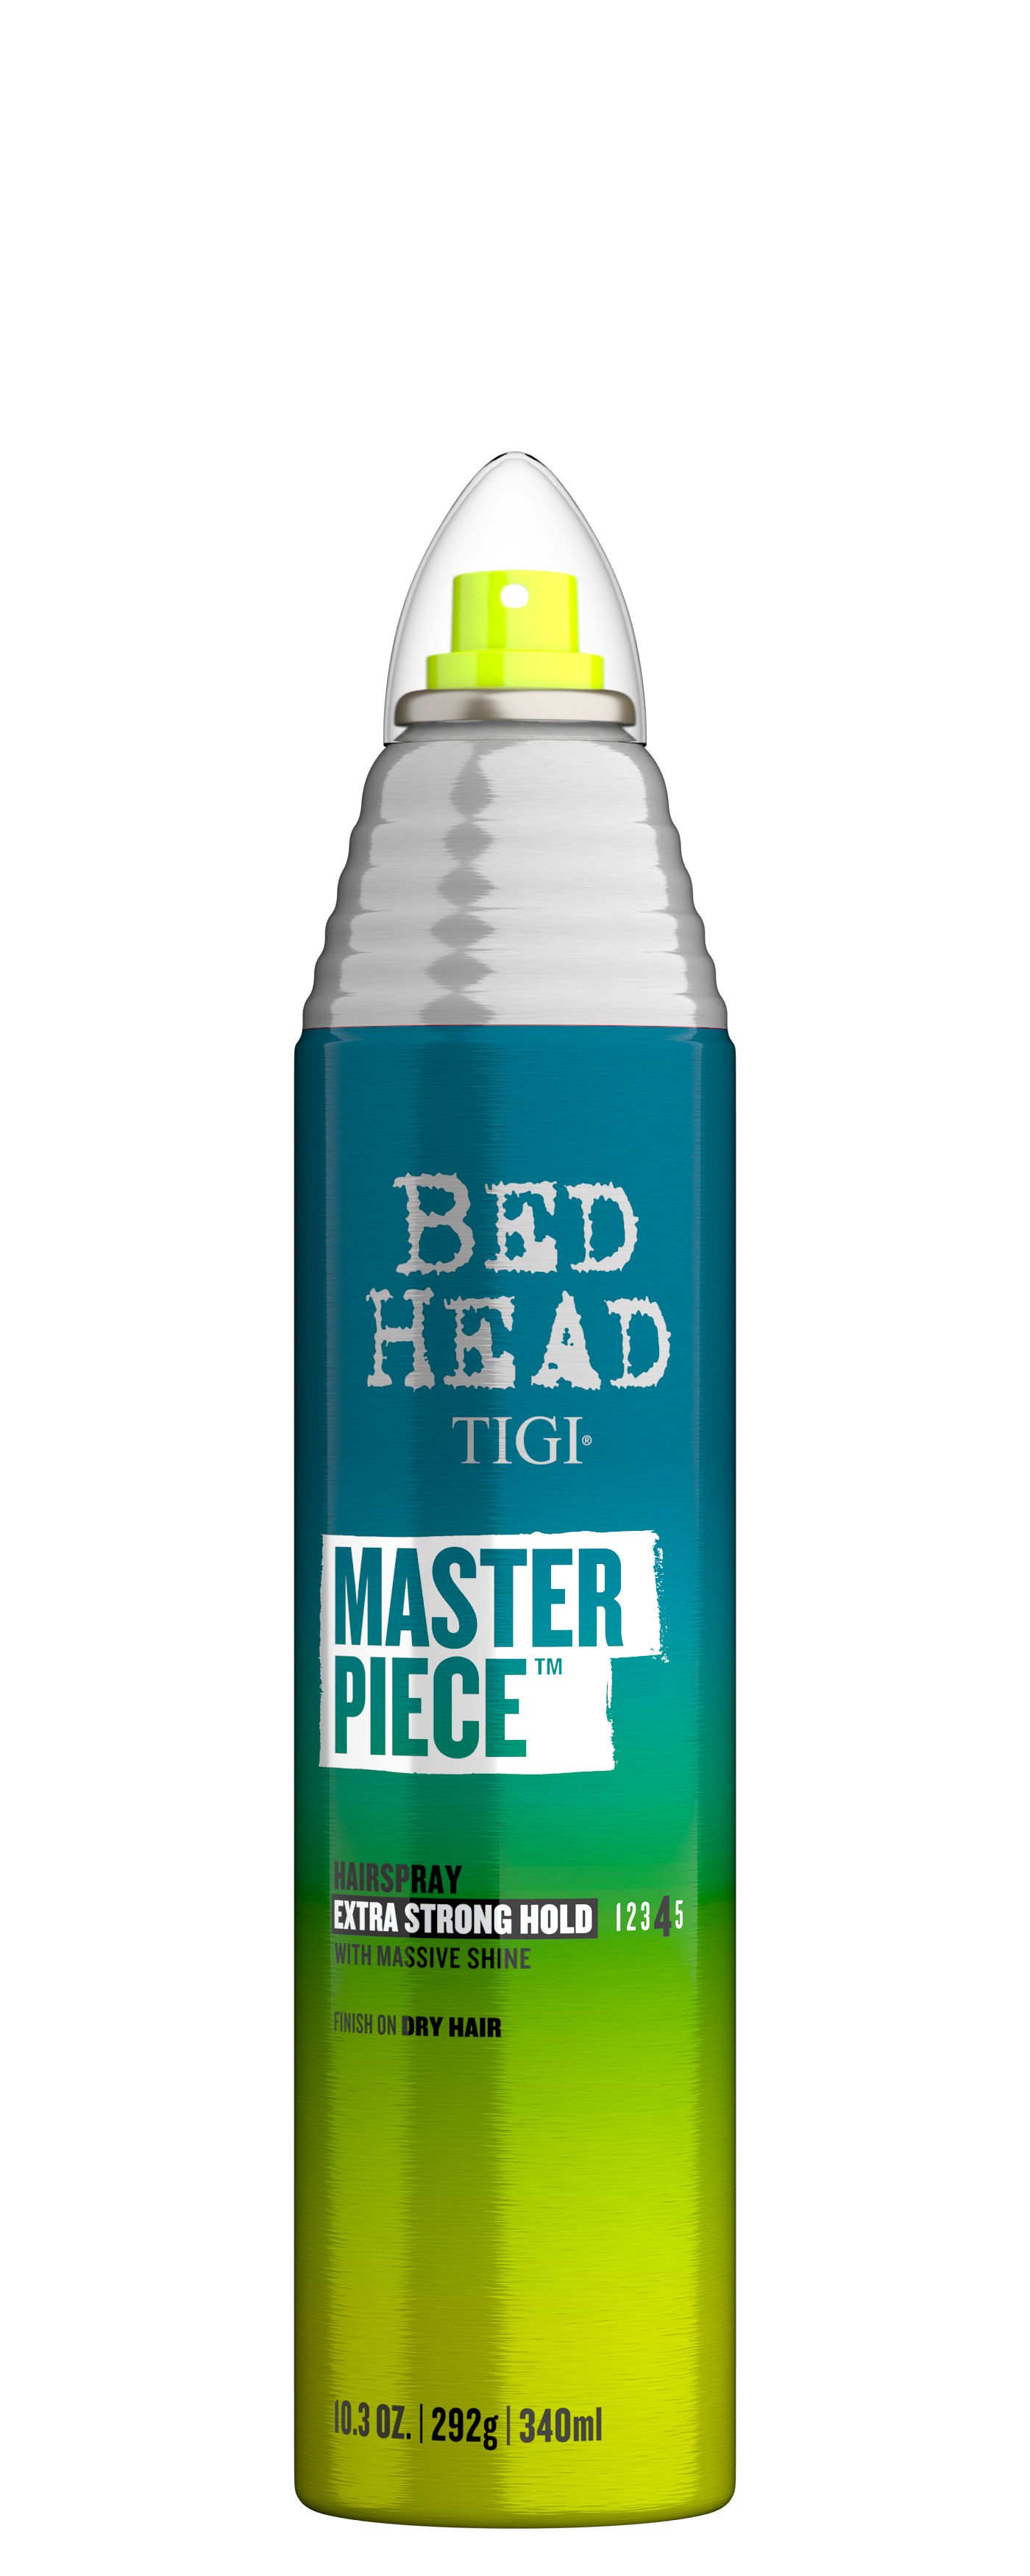 Лаки для волос:  TIGI -  Лак для блеска и фиксации MASTERPIECE BED HEAD (340 мл)